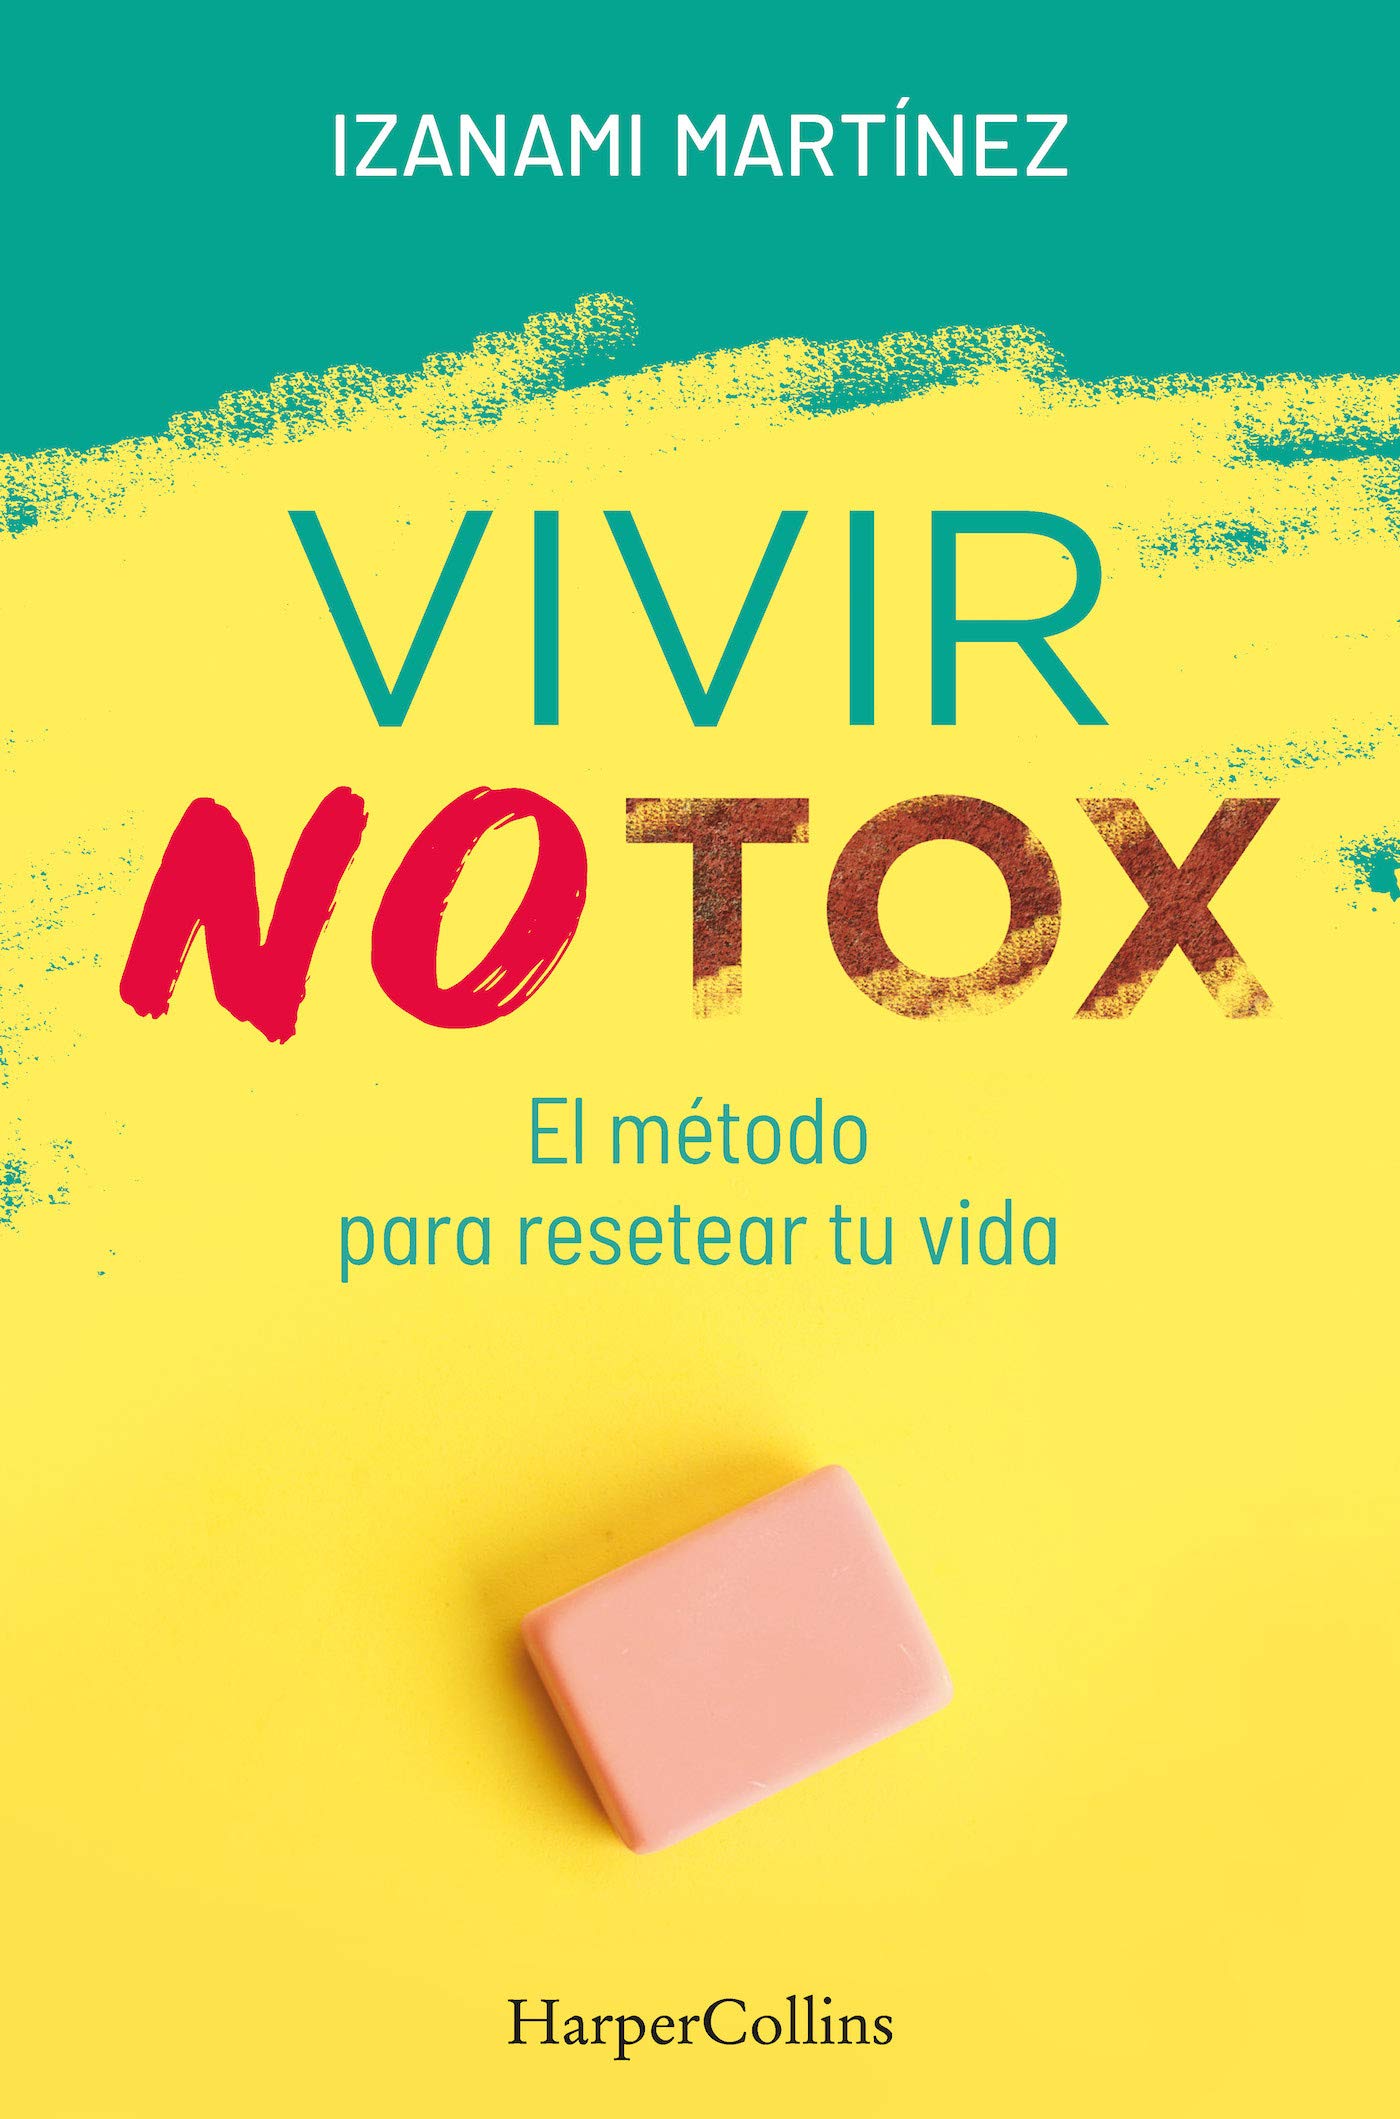 Vivir Notox, el método para resetear tu vida, de Izanami Martínez